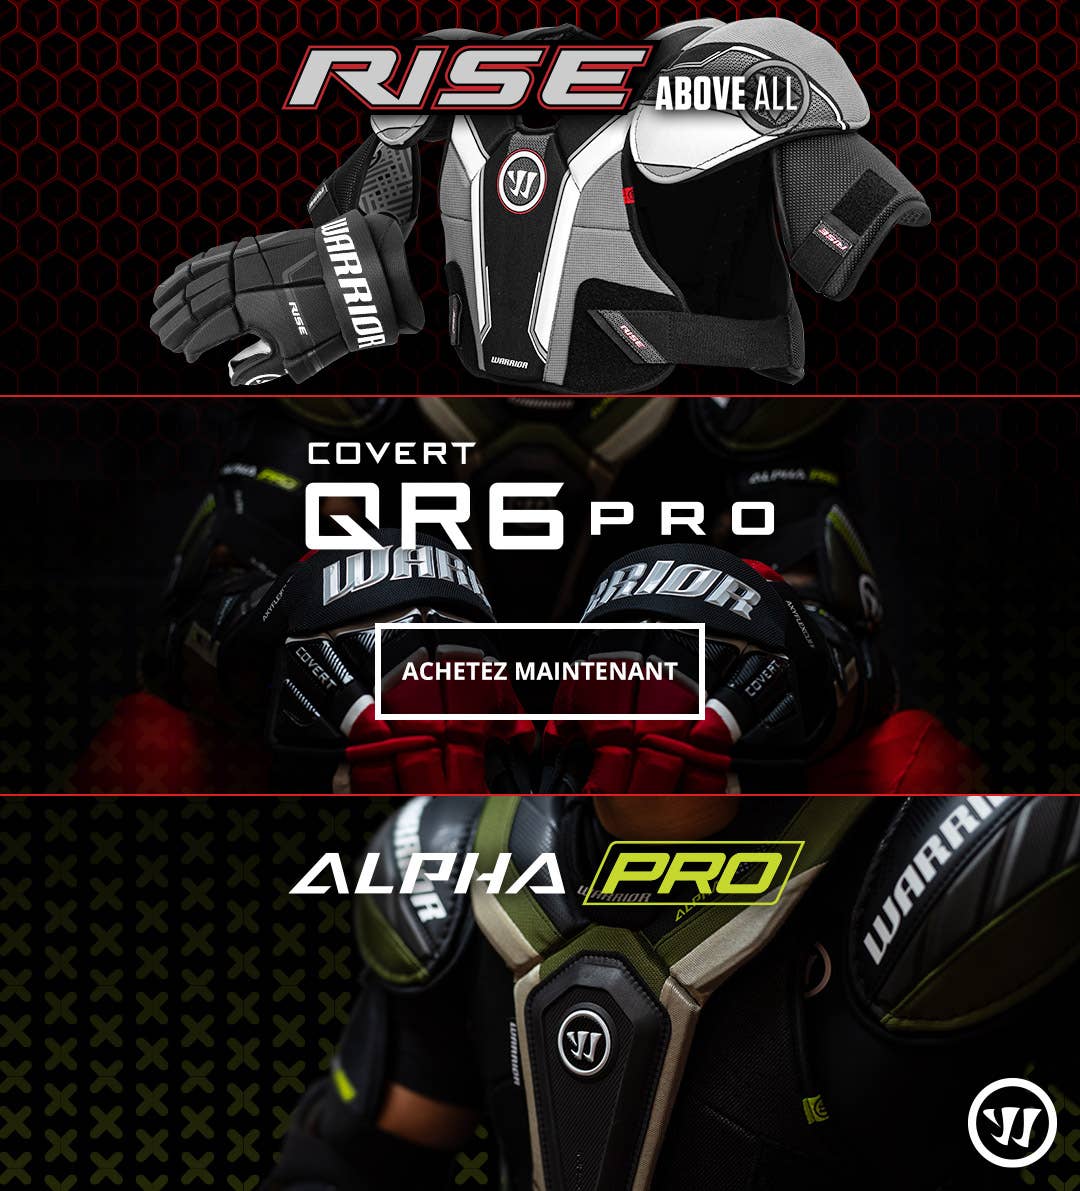 Nouveau équipement Warrior Gear: Gants Covert QR6, Protection Alpha Pro et LT Protective, et Protection Rise